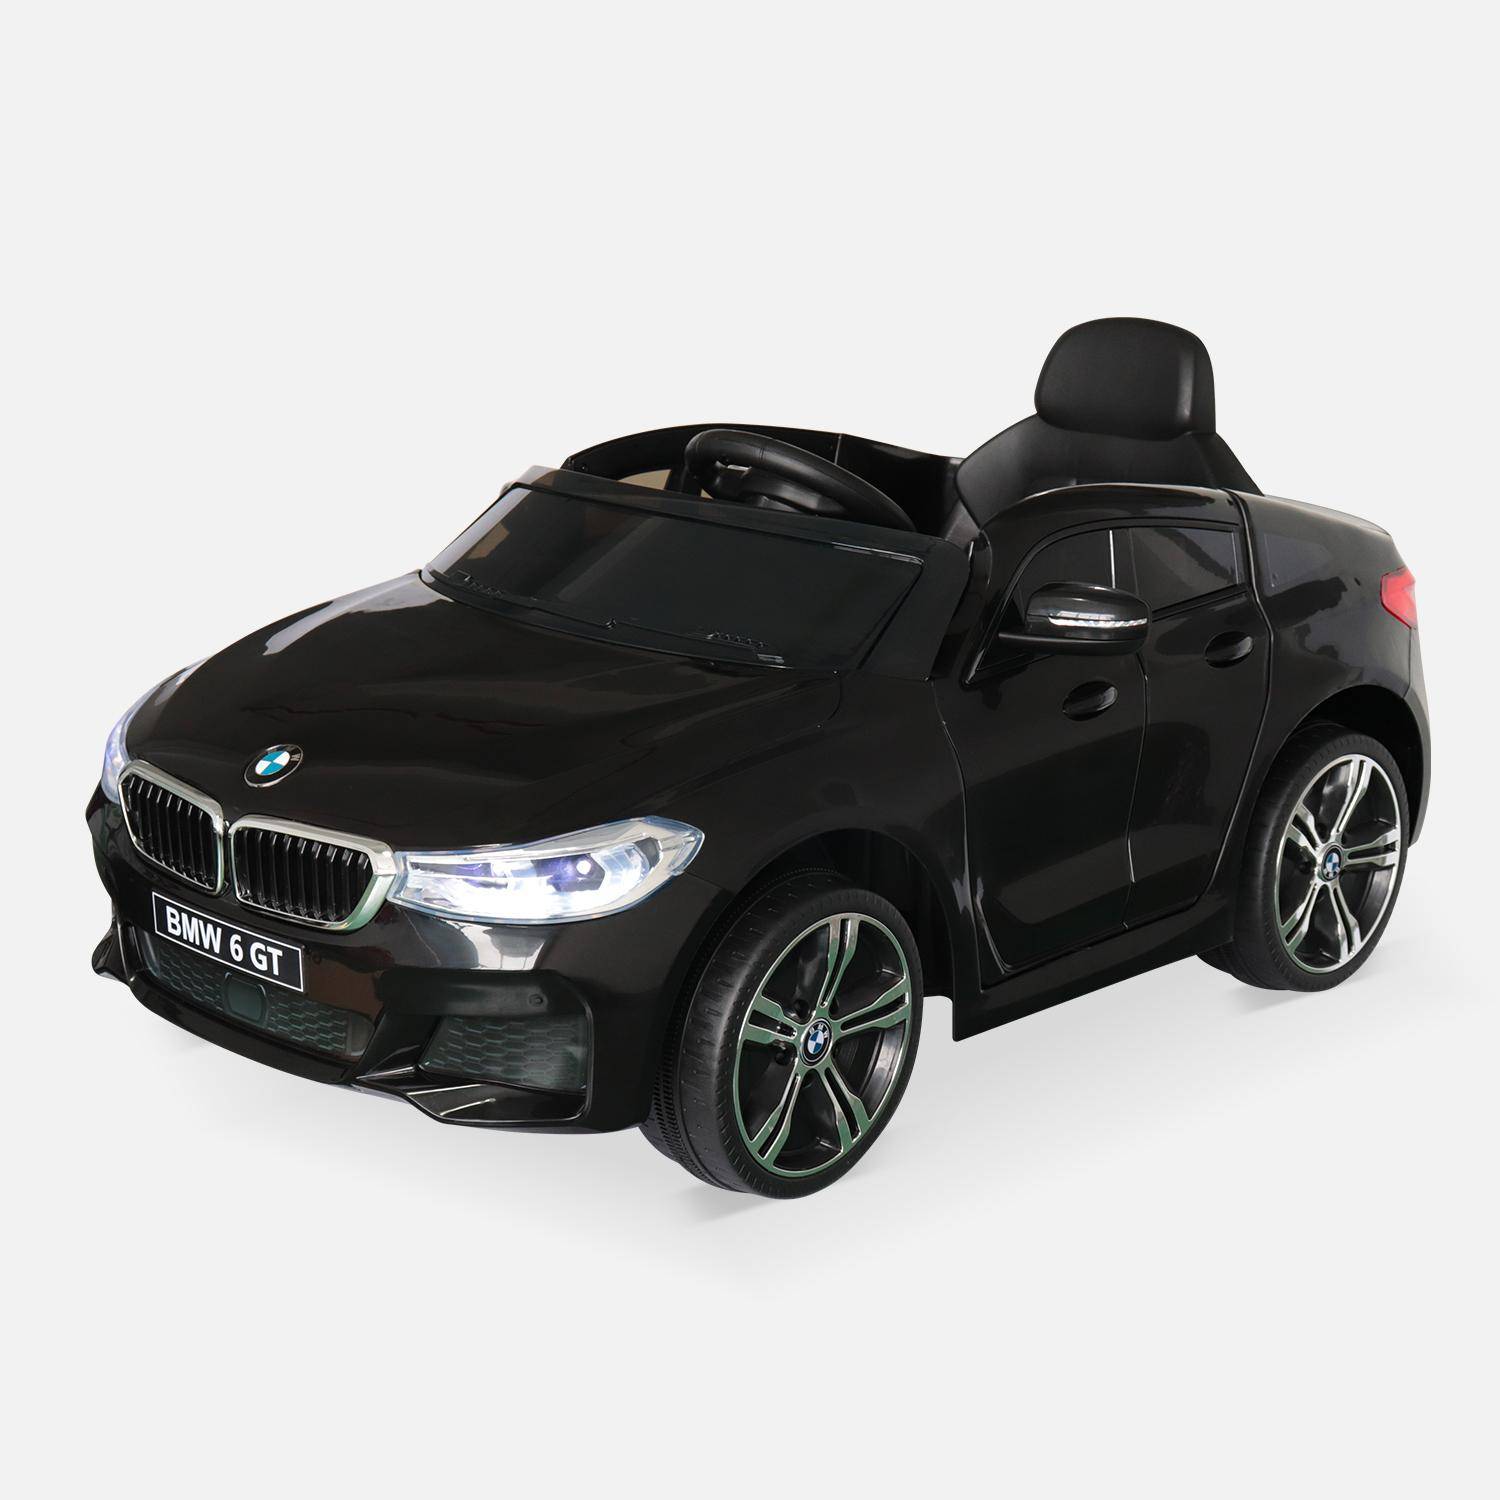 BMW GT6 Gran Turismo zwart, elektrische auto 12V, 1 plaats, cabriolet voor kinderen met autoradio en afstandsbediening Photo2